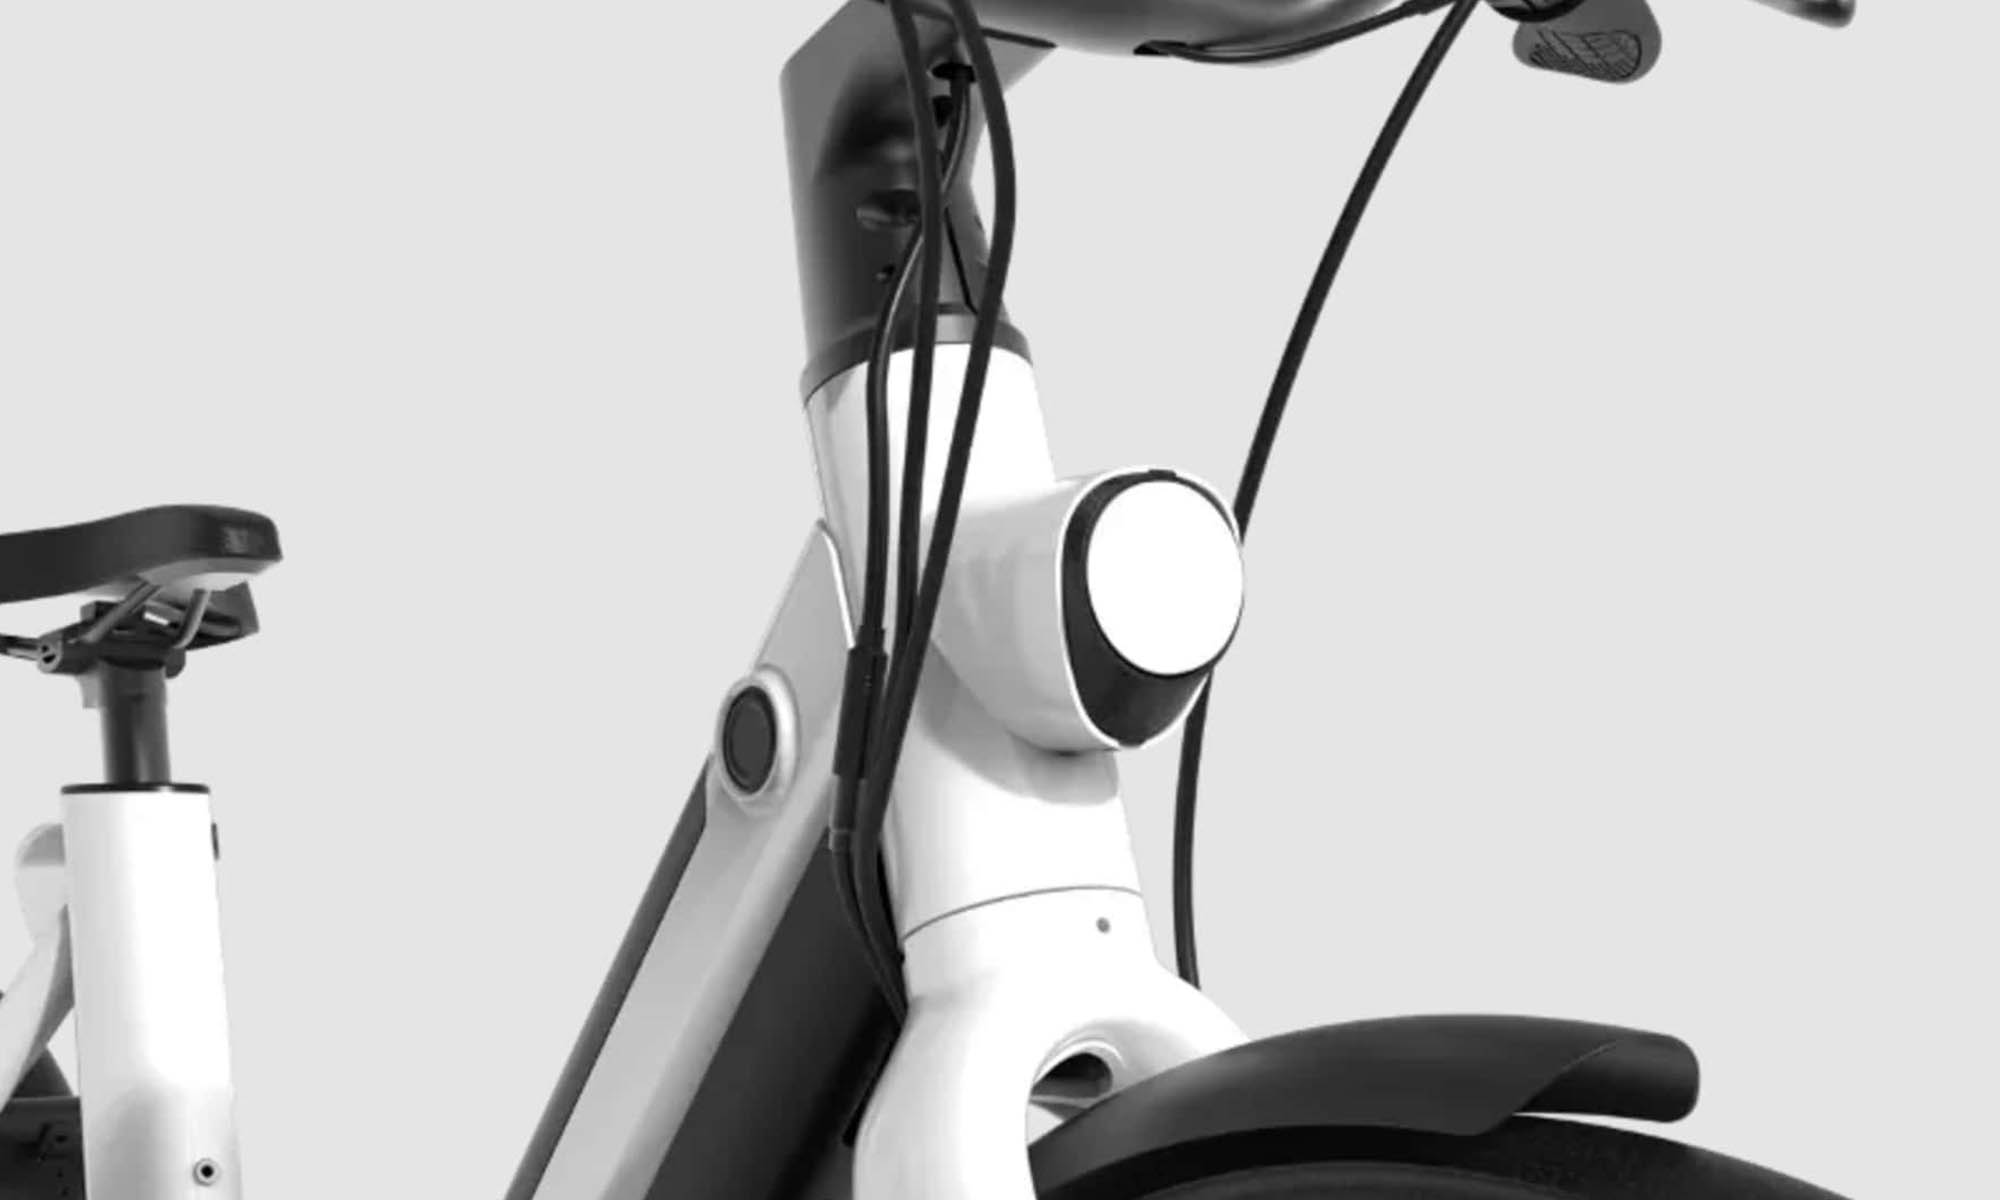 Bird lanza sus nuevas bicicletas eléctricas: dos modelos basados en cuadros diferentes.